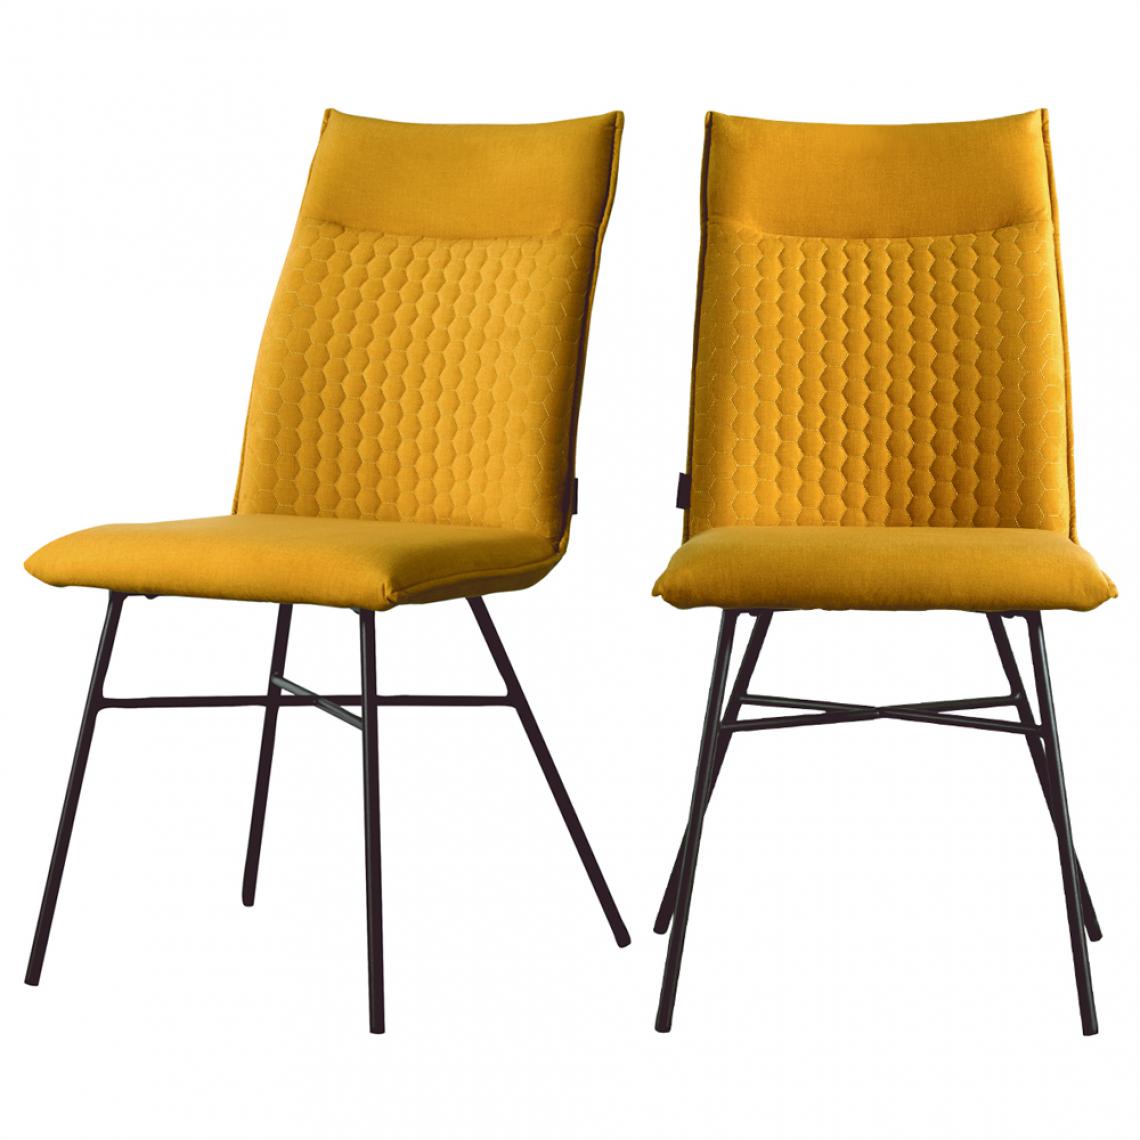 Selsey - Lot de 2 chaises - CARLYN - matelassées - jaune moutarde - pieds en métal - Chaises